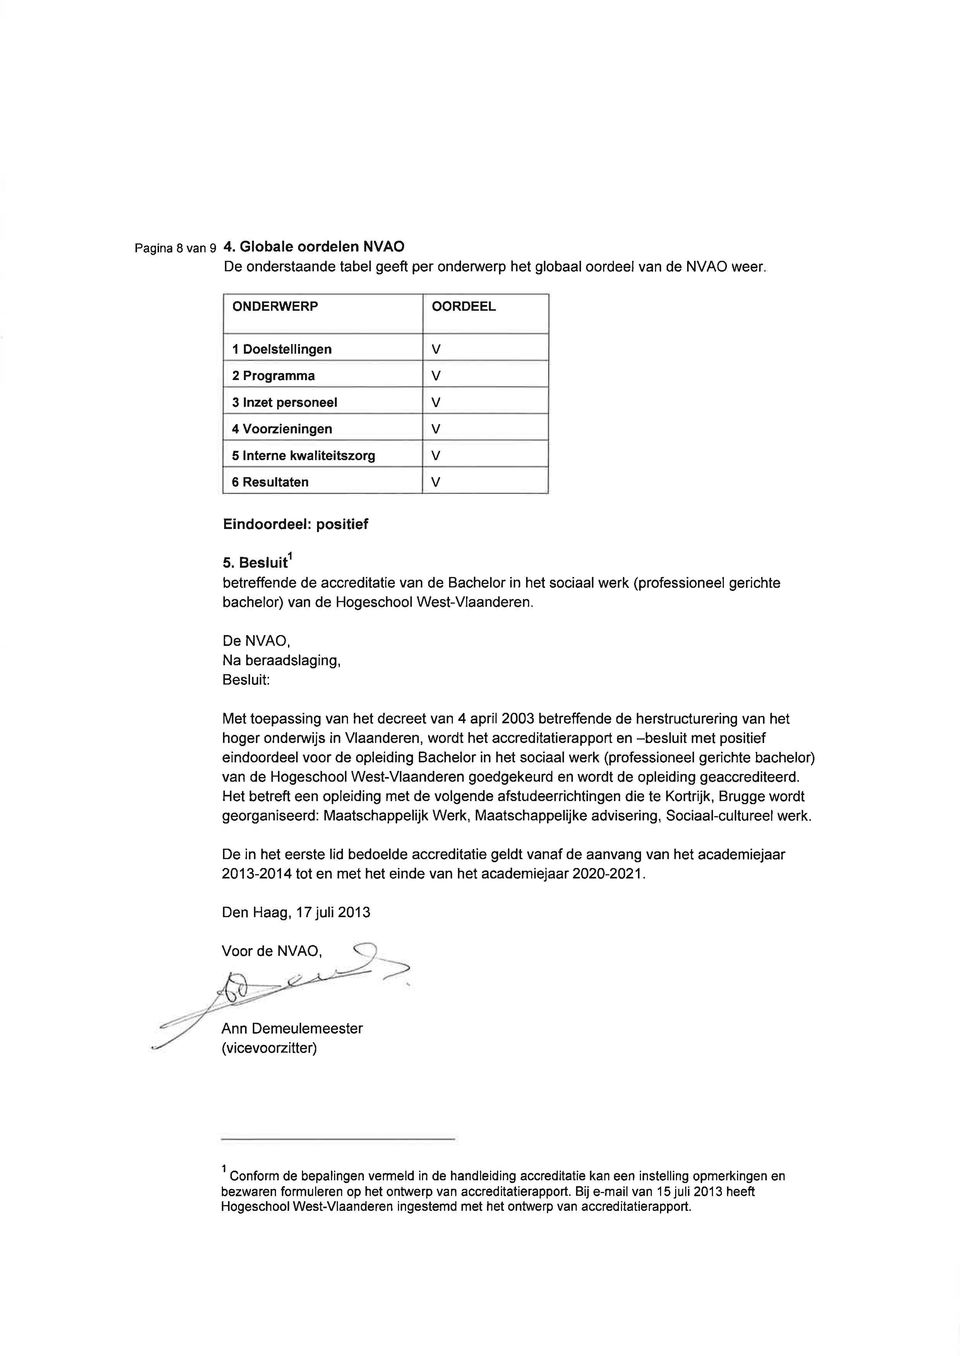 kwaliteitszorg 6 Resultaten Eindoordeel: positief 5. Besluitr betreffende de accreditatie van de Bachelor in het sociaal werk (professioneel gerichte bachelor) van de Hogeschool West-Vlaanderen.